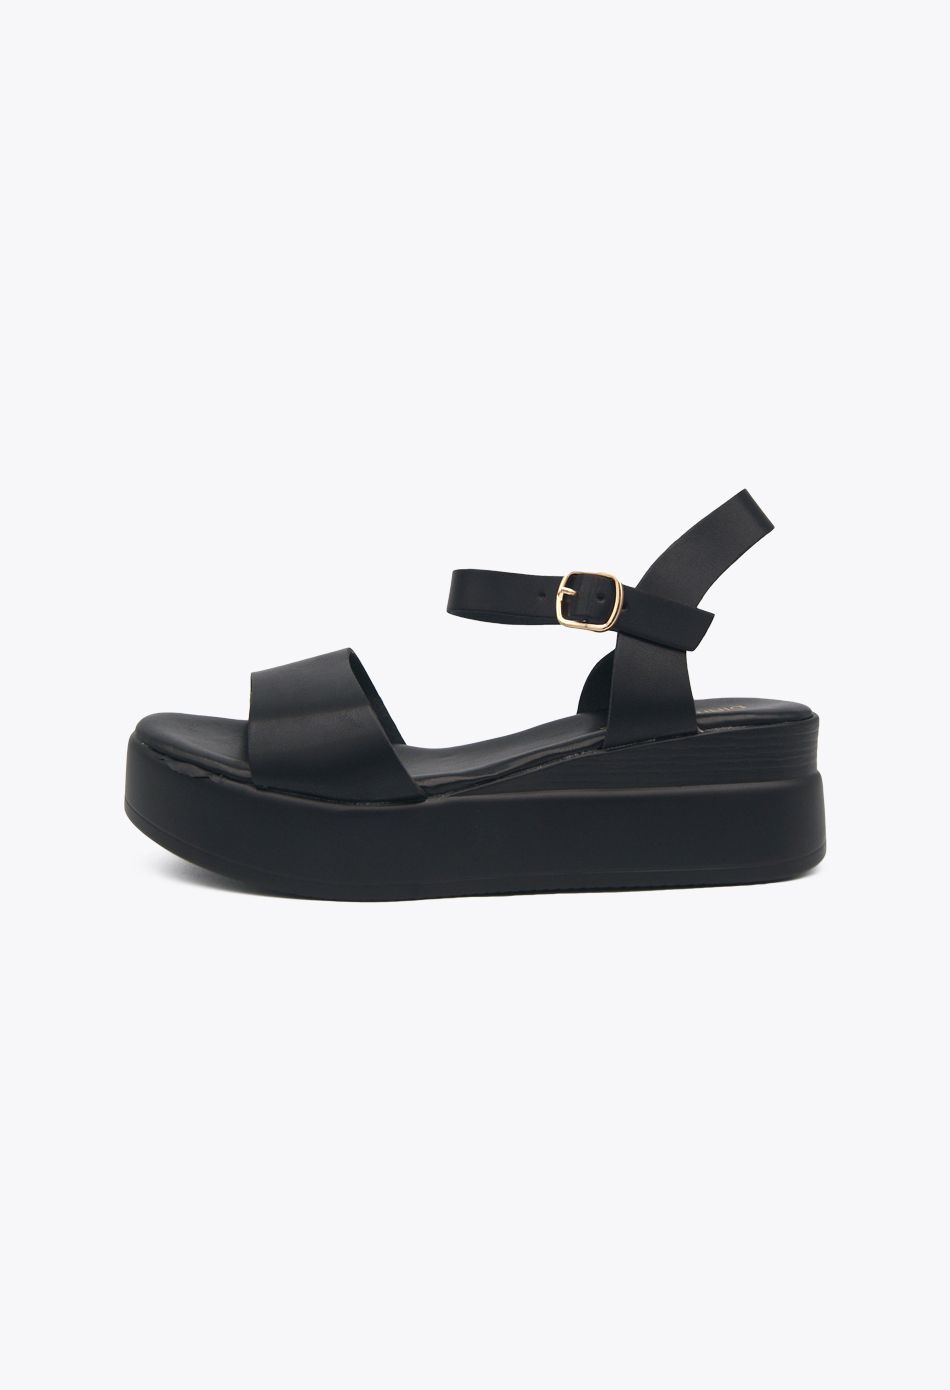 Πλατφόρμες Μονόχρωμες Μαύρο / 55-209-black Ανοιχτά Παπούτσια joya.gr